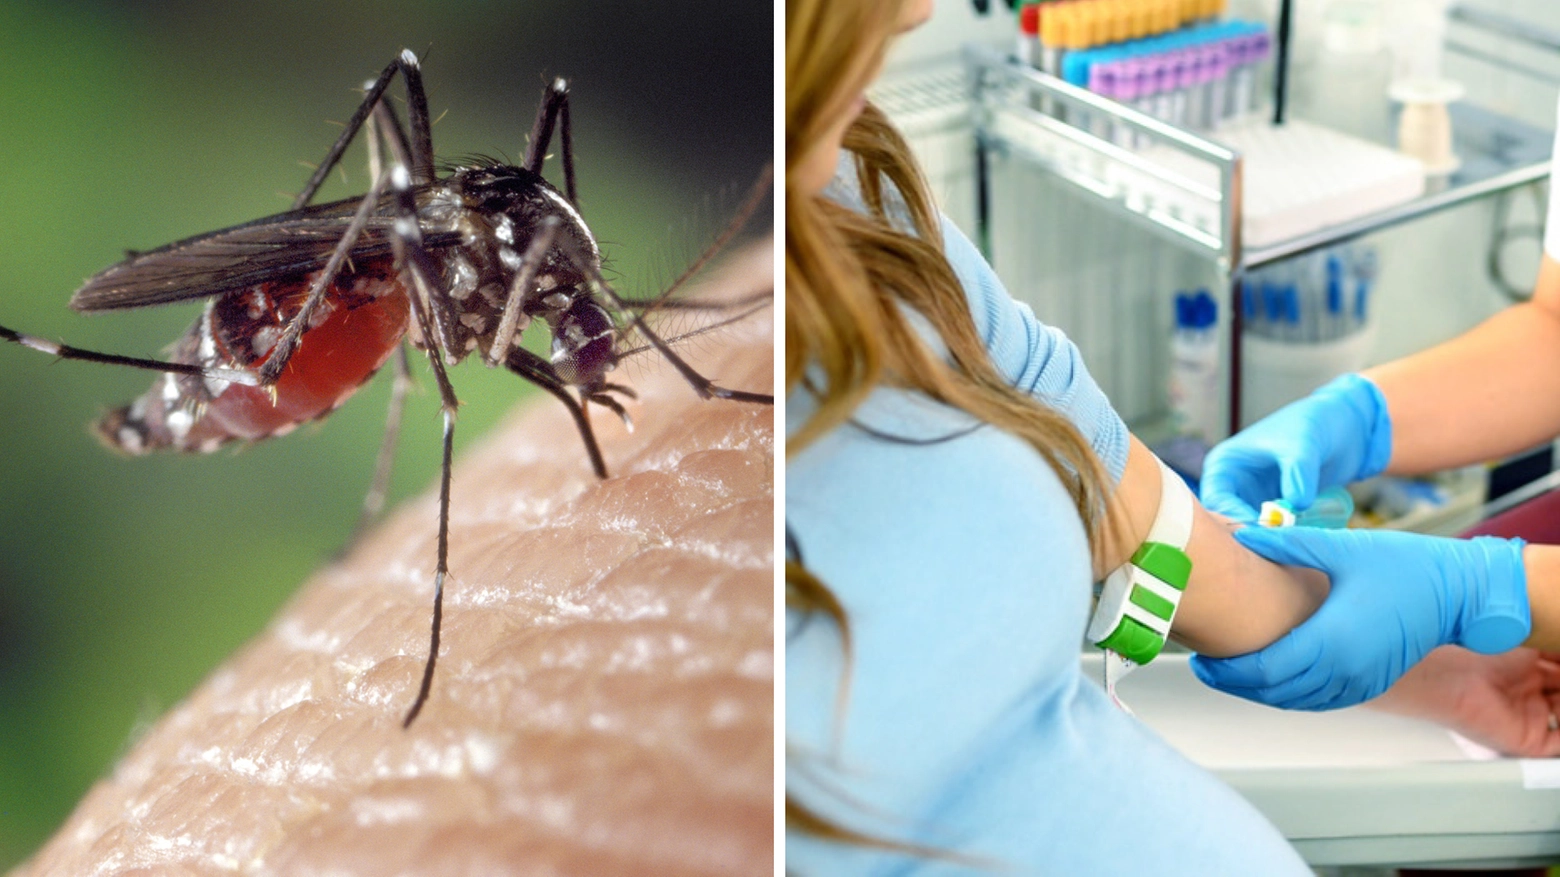 La malattia portata dalla zanzara Aedes (al centro) può provocare rush e dolore intenso alla testa e dietro agli occhi